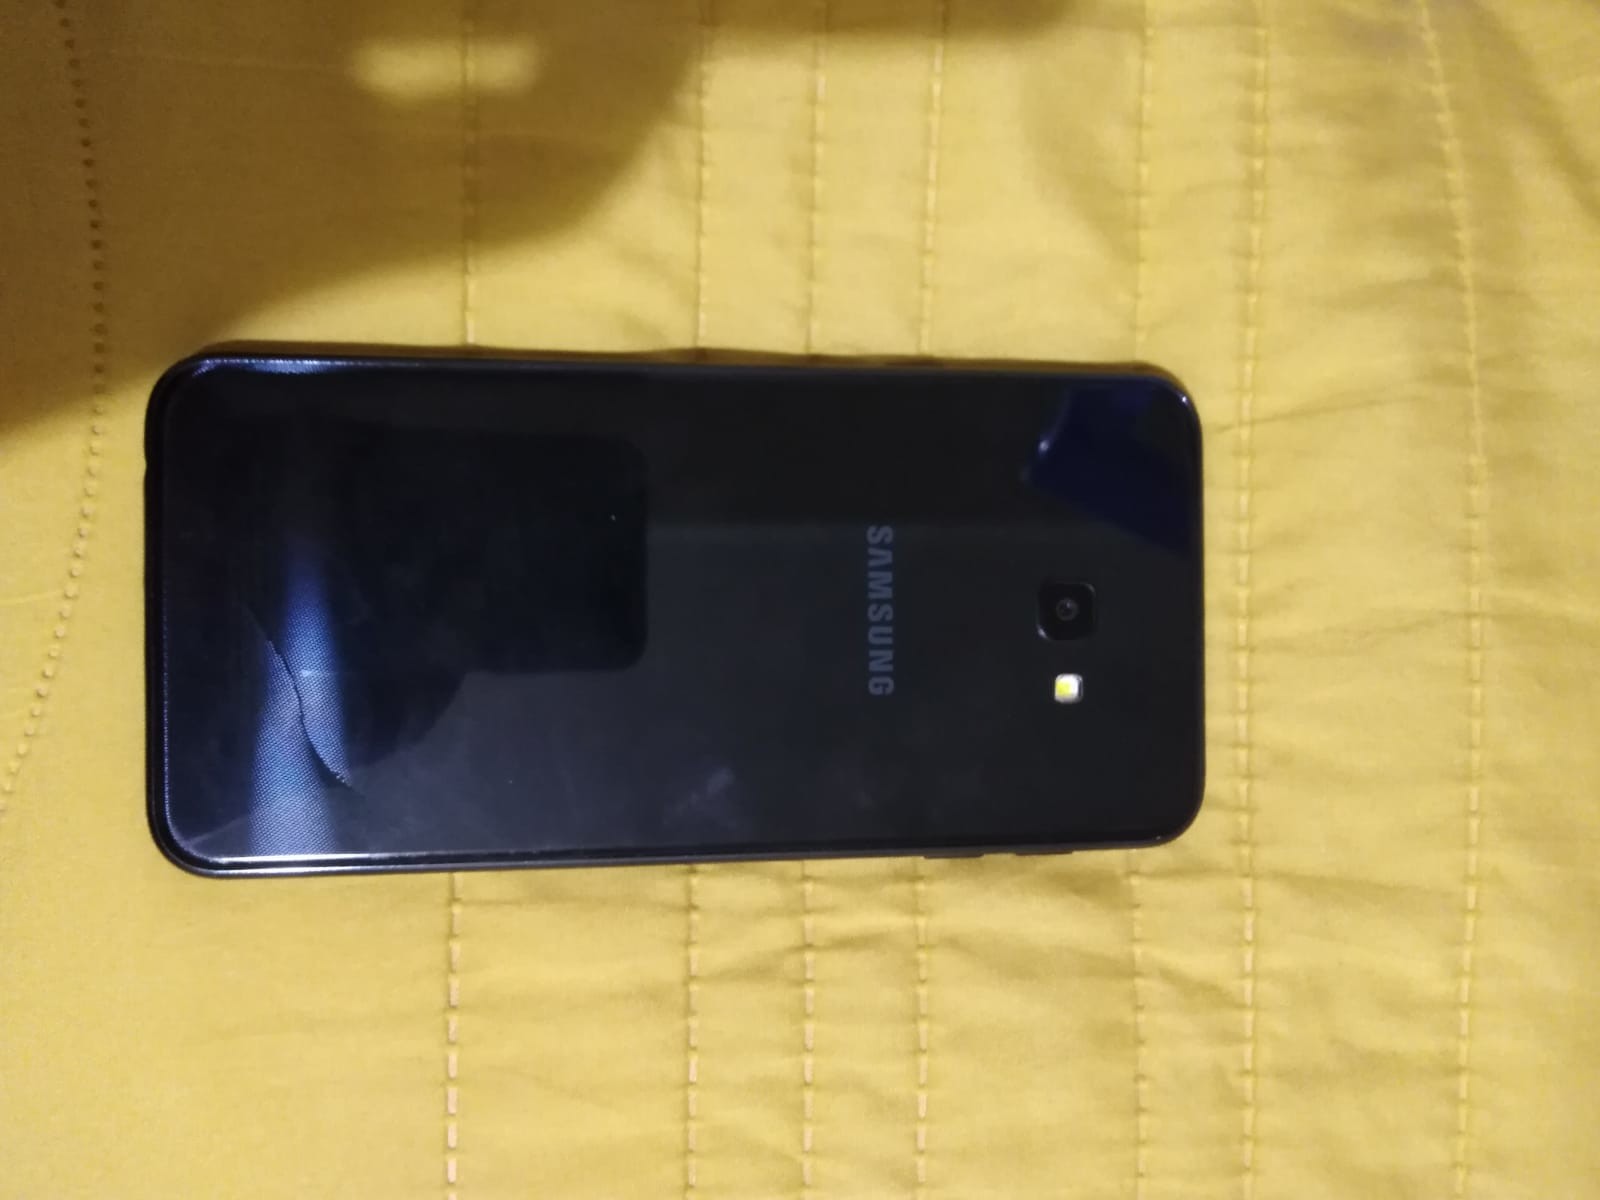 Samsung Galaxy J4 Plus Çok Ucuza(650TL)